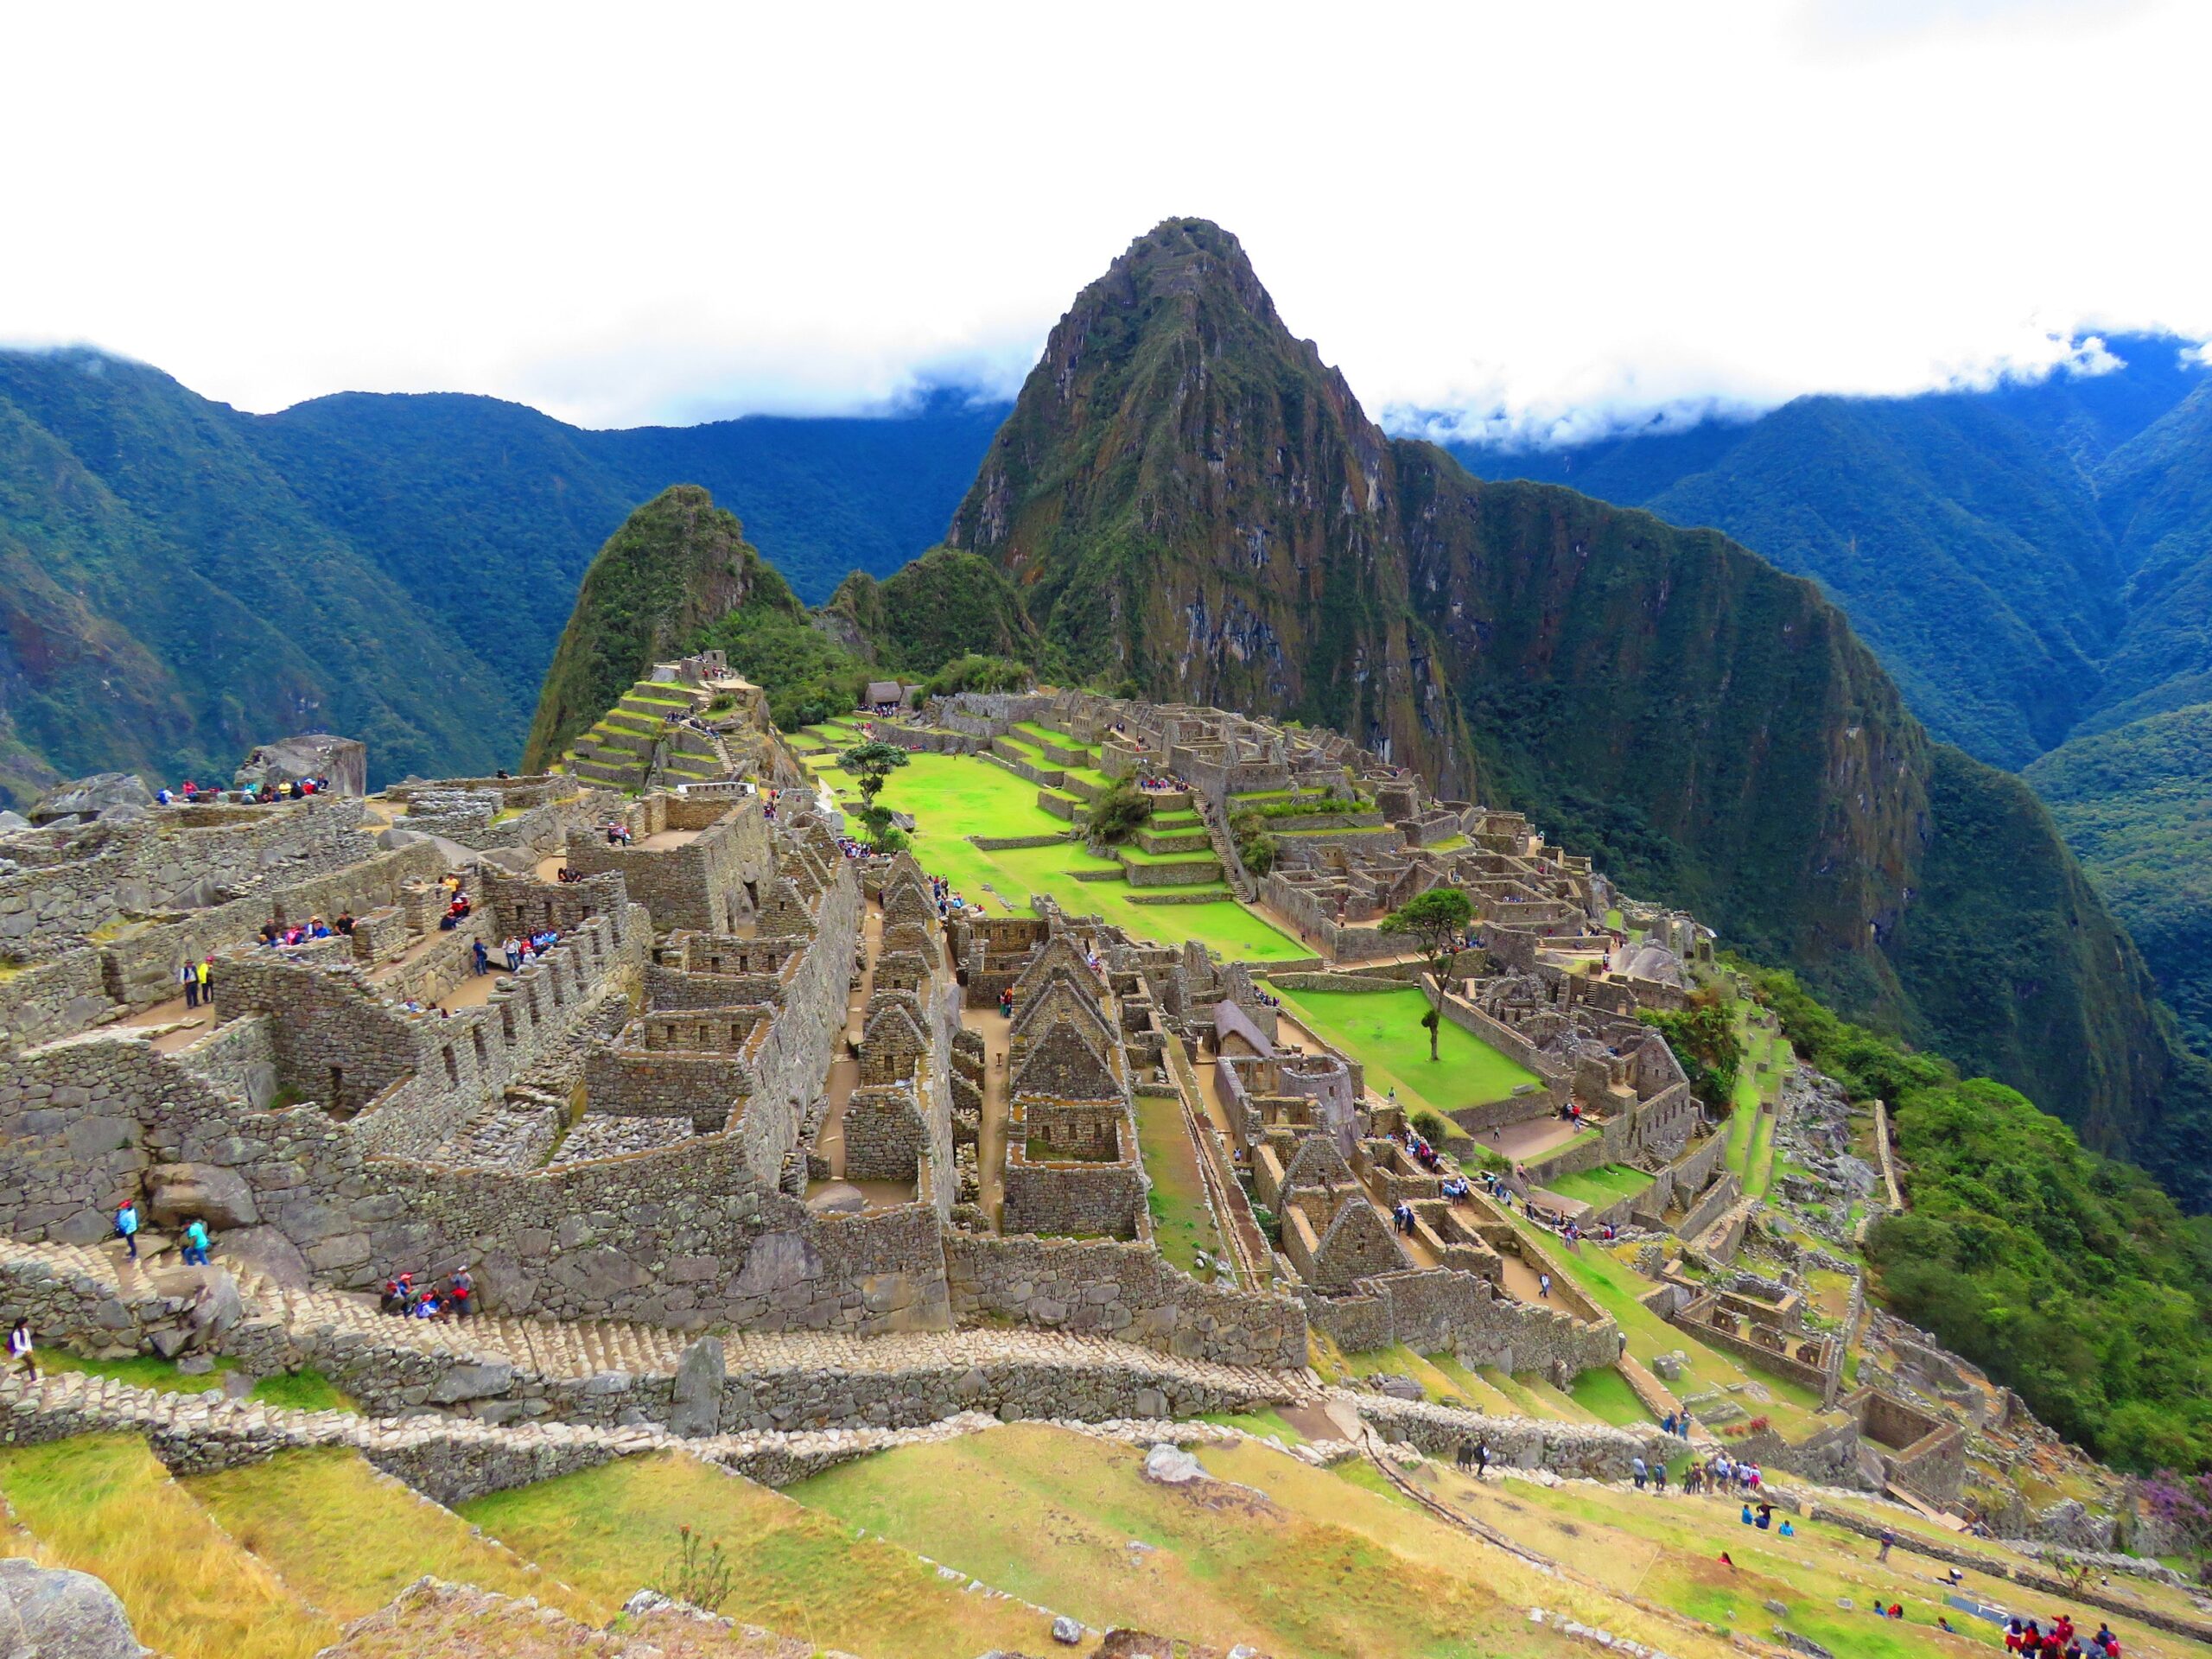 The Inca Empire's